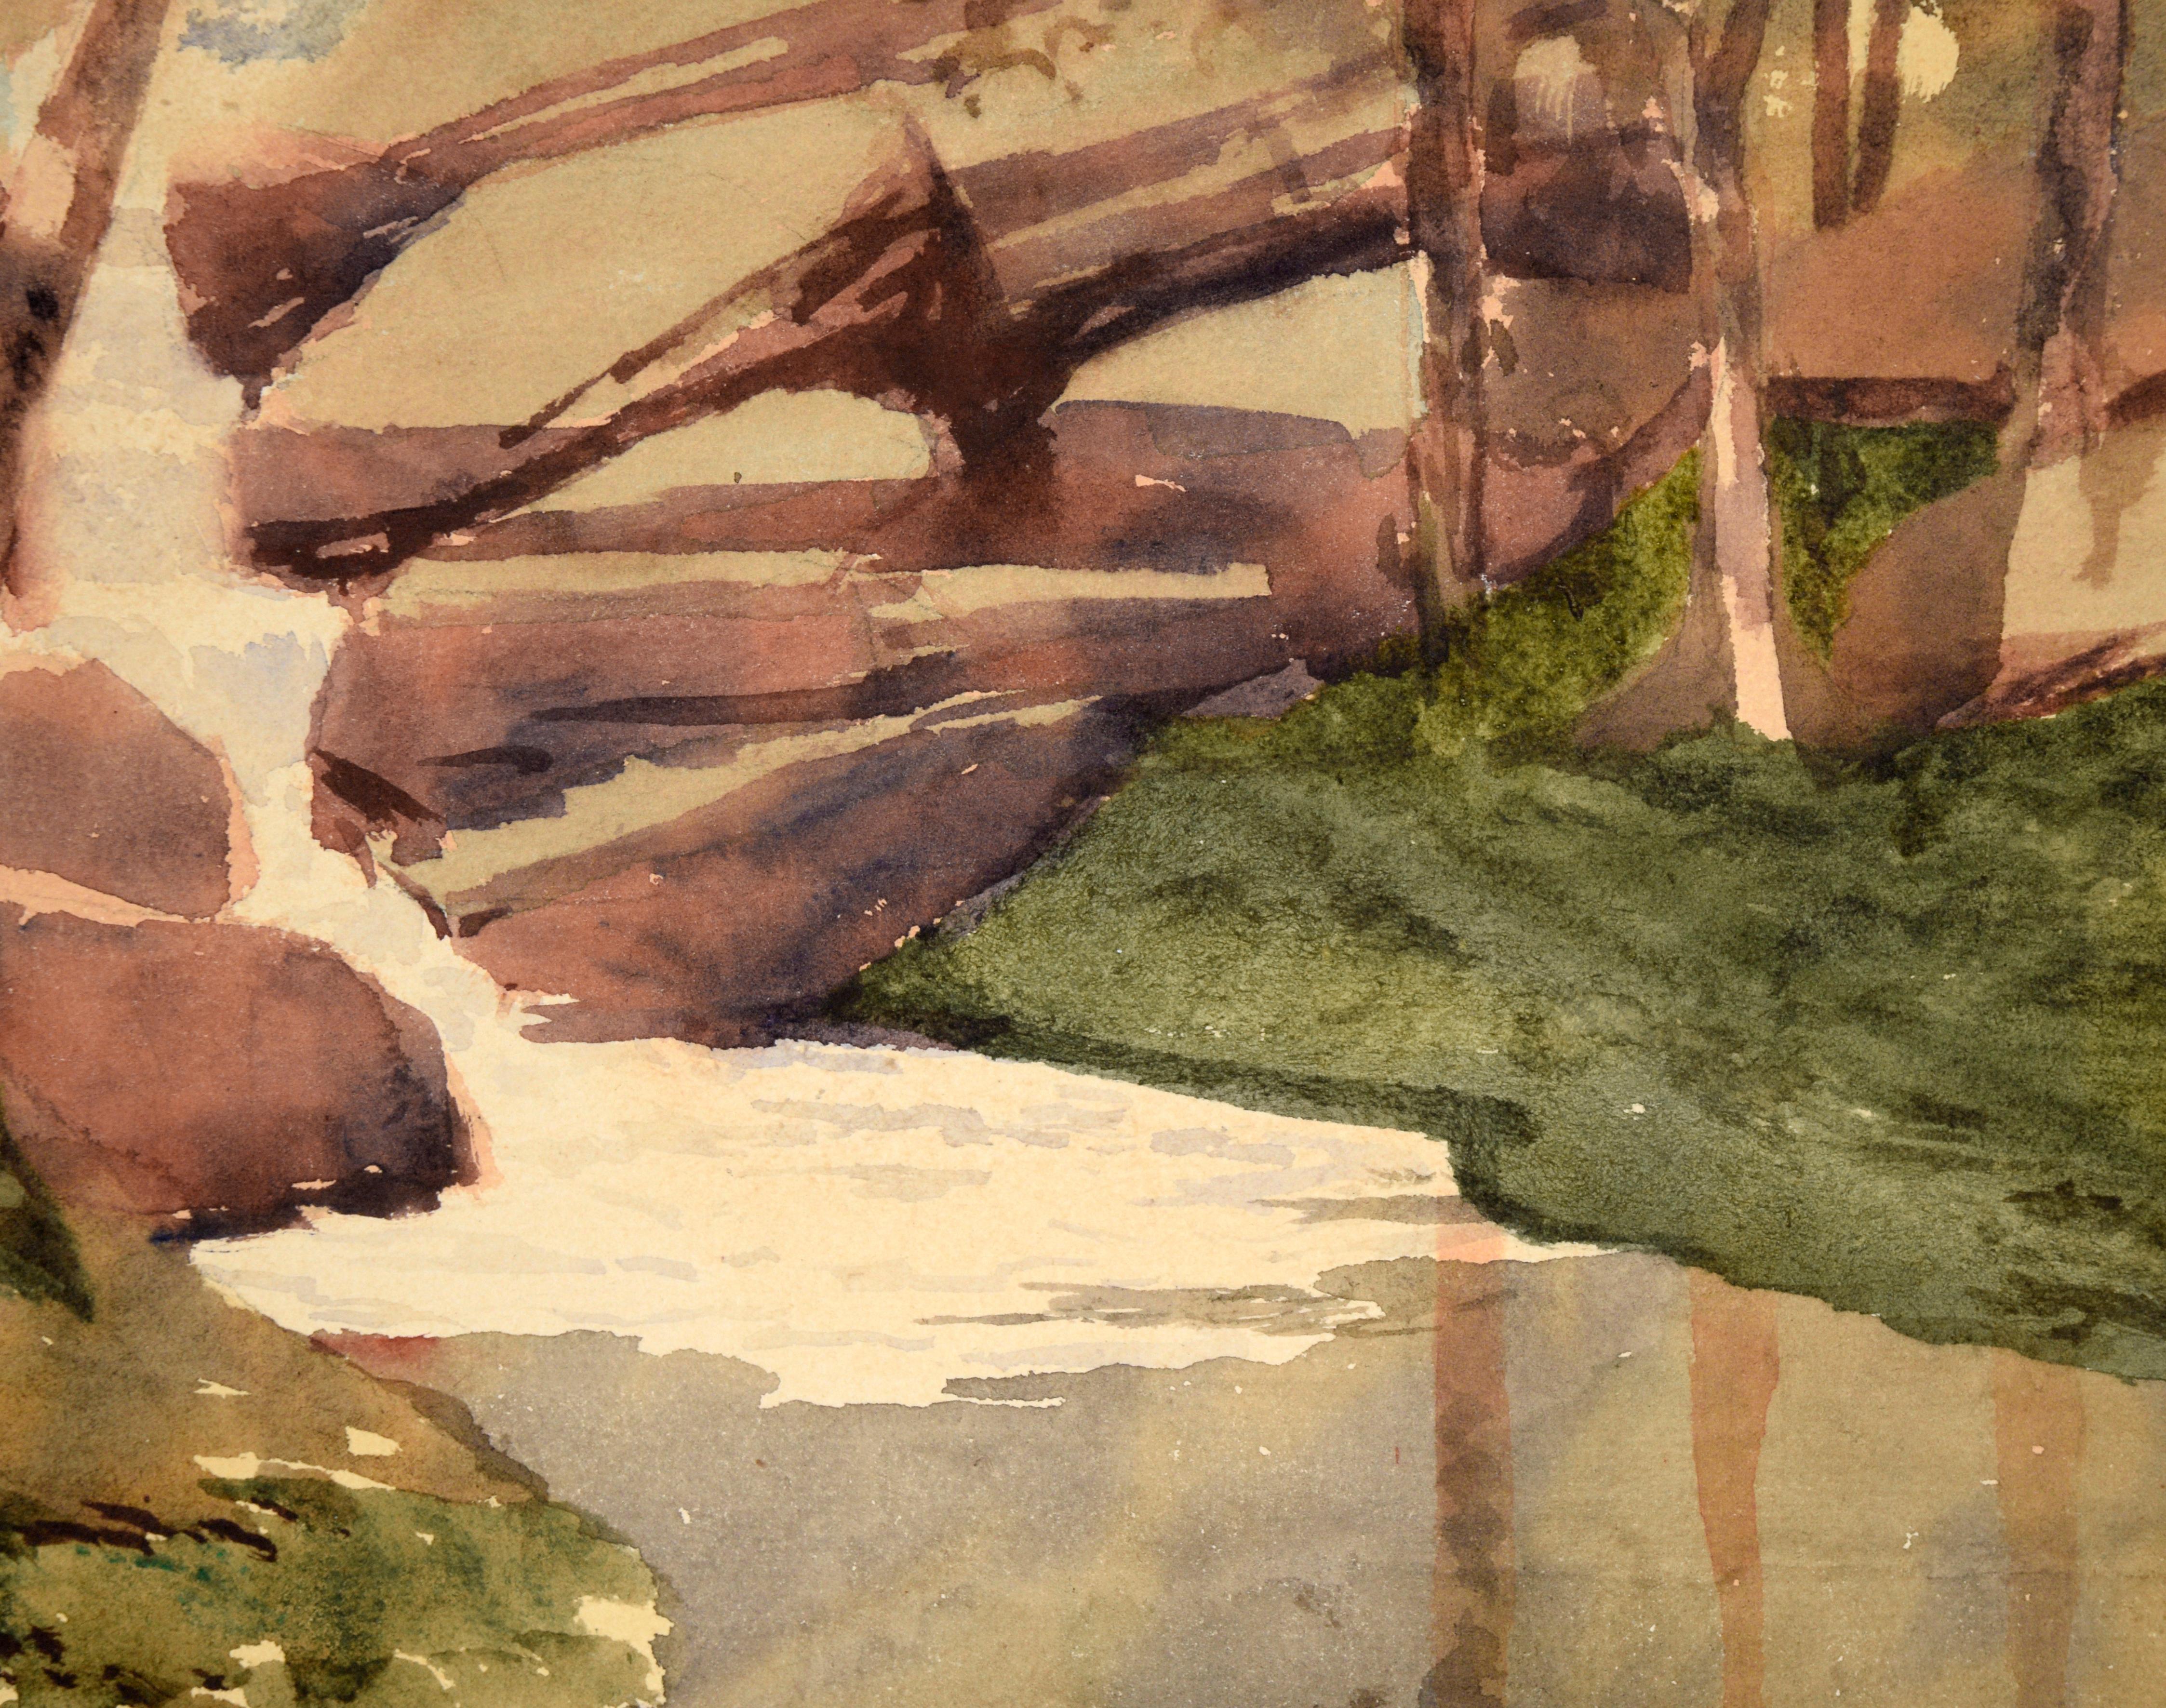 Cascading Stream in the Woods - Watercolor Landscape on Paper - Beige Landscape Art by Helen R. Barham